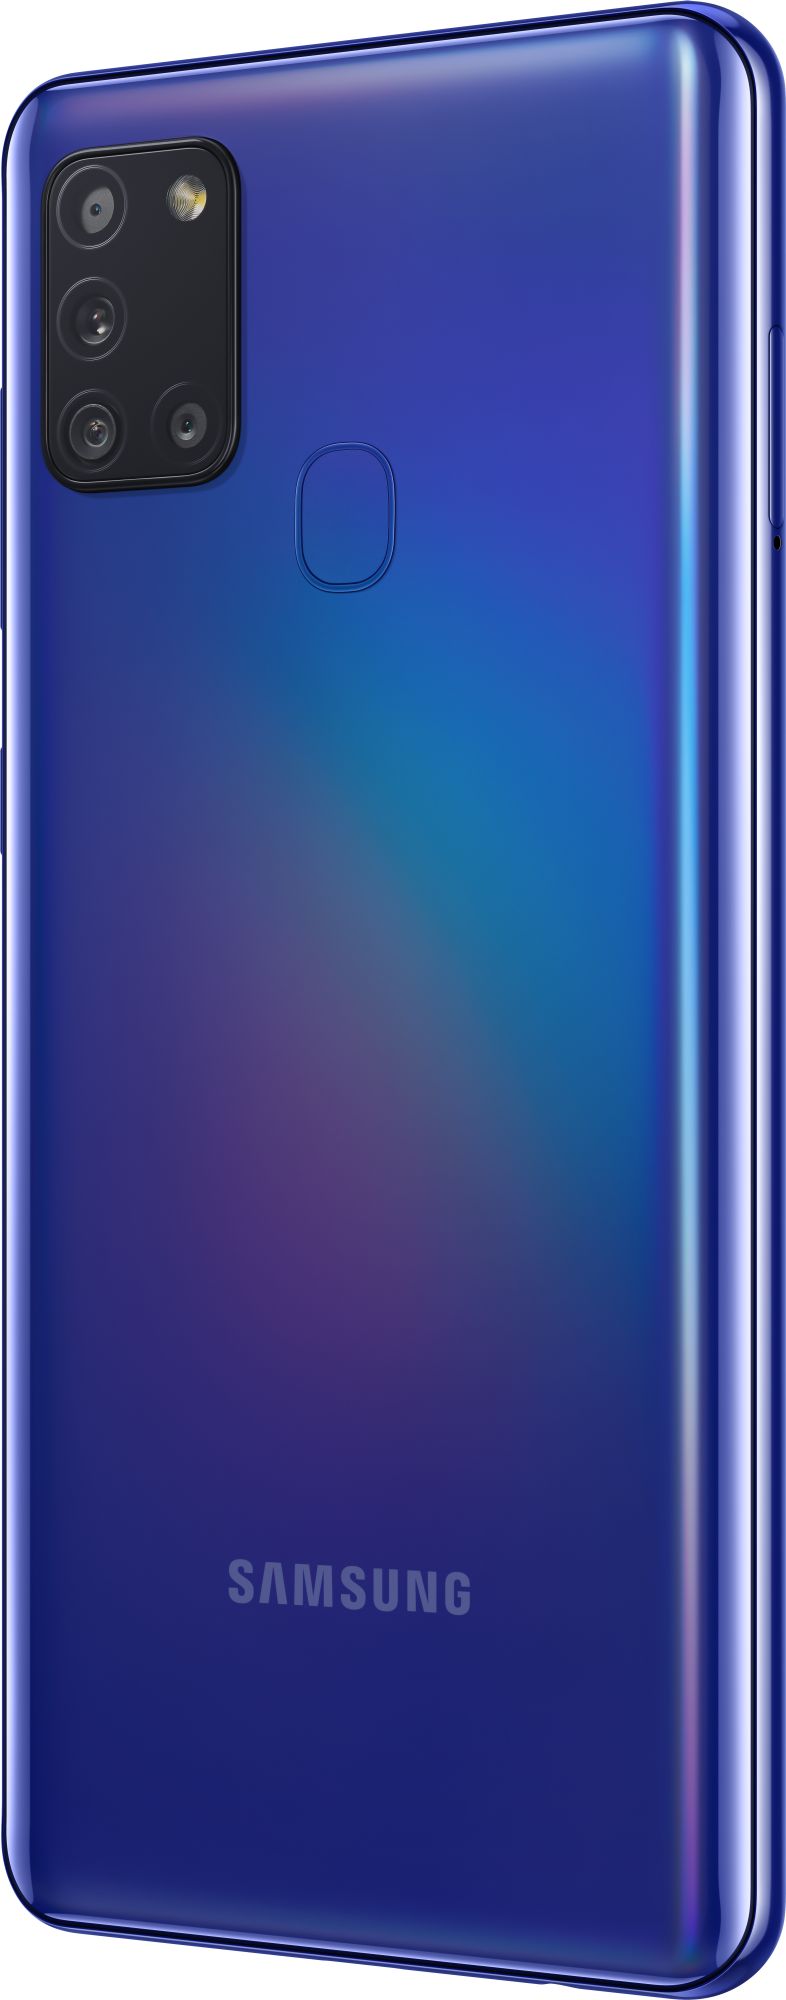 Samsung Galaxy A21s 64GB 